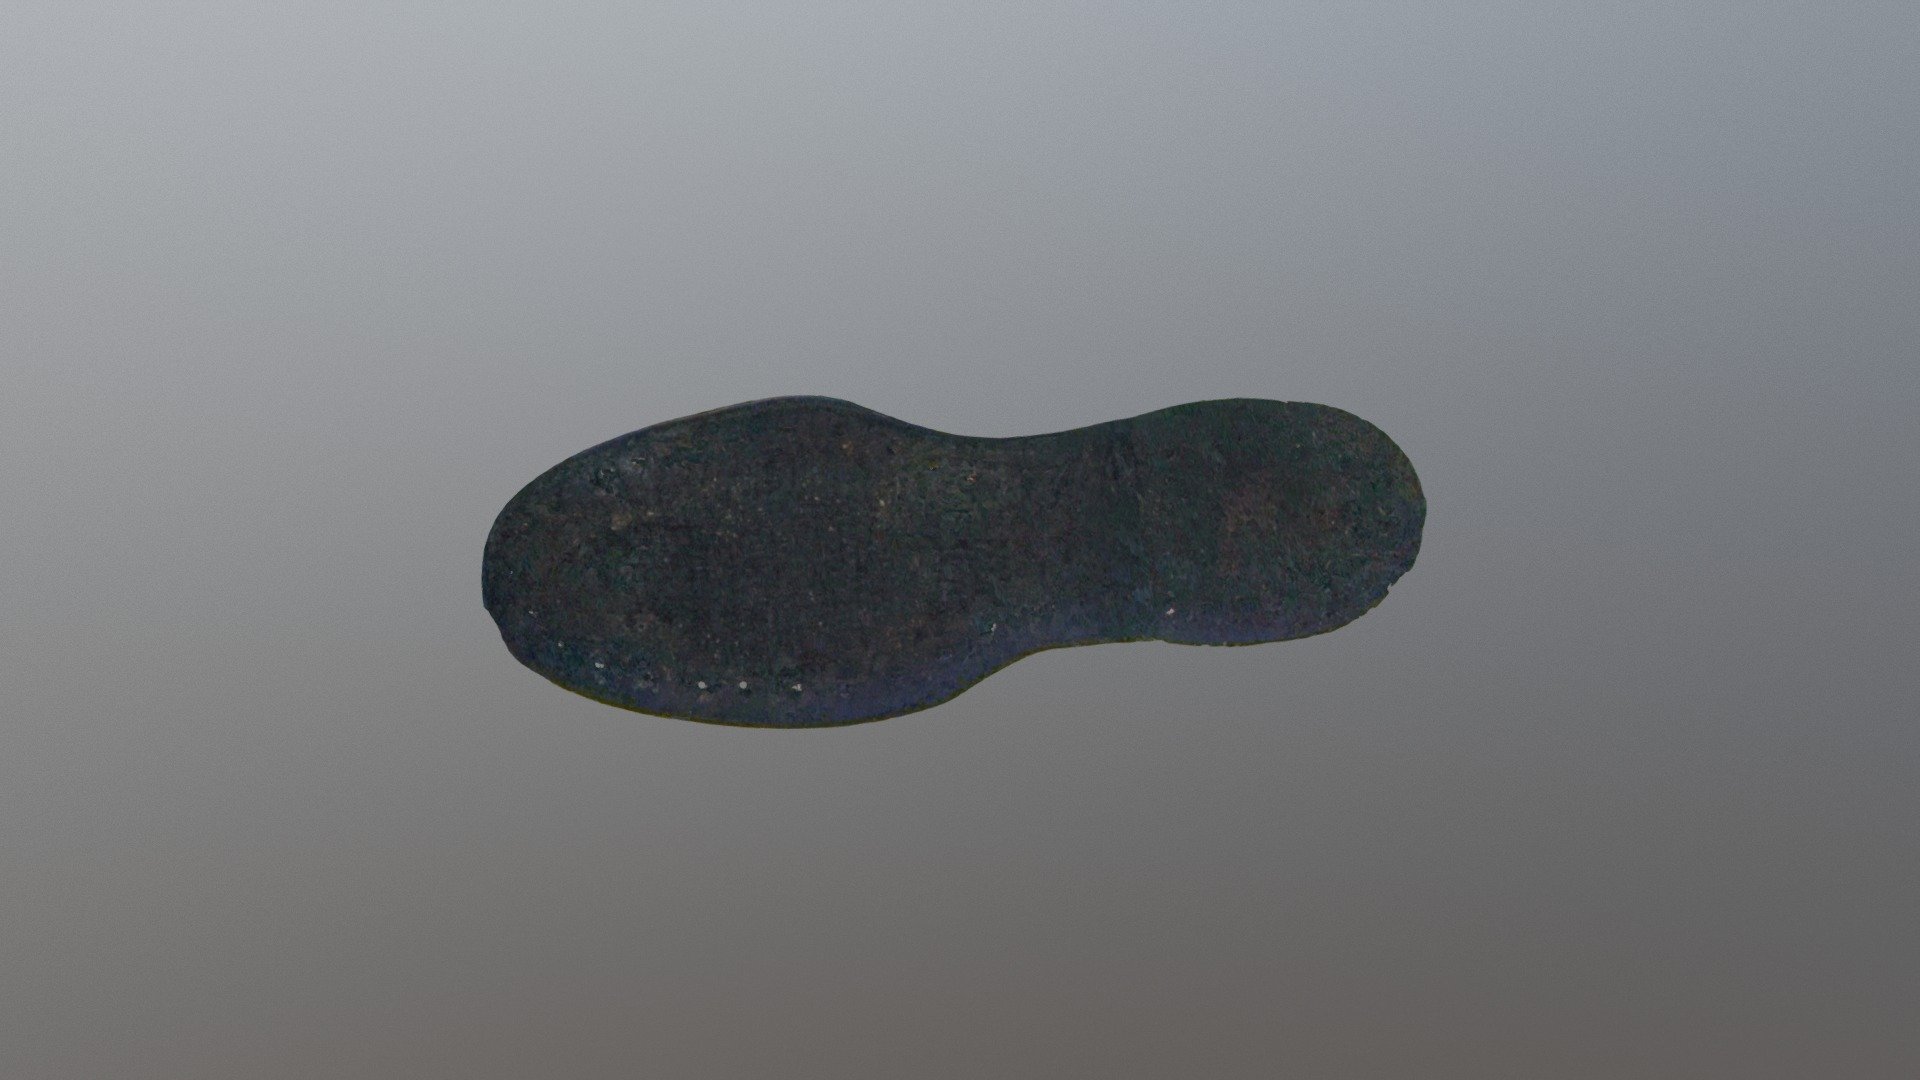 Shoe Child's Shoe Sole (VCU_3D_3034)